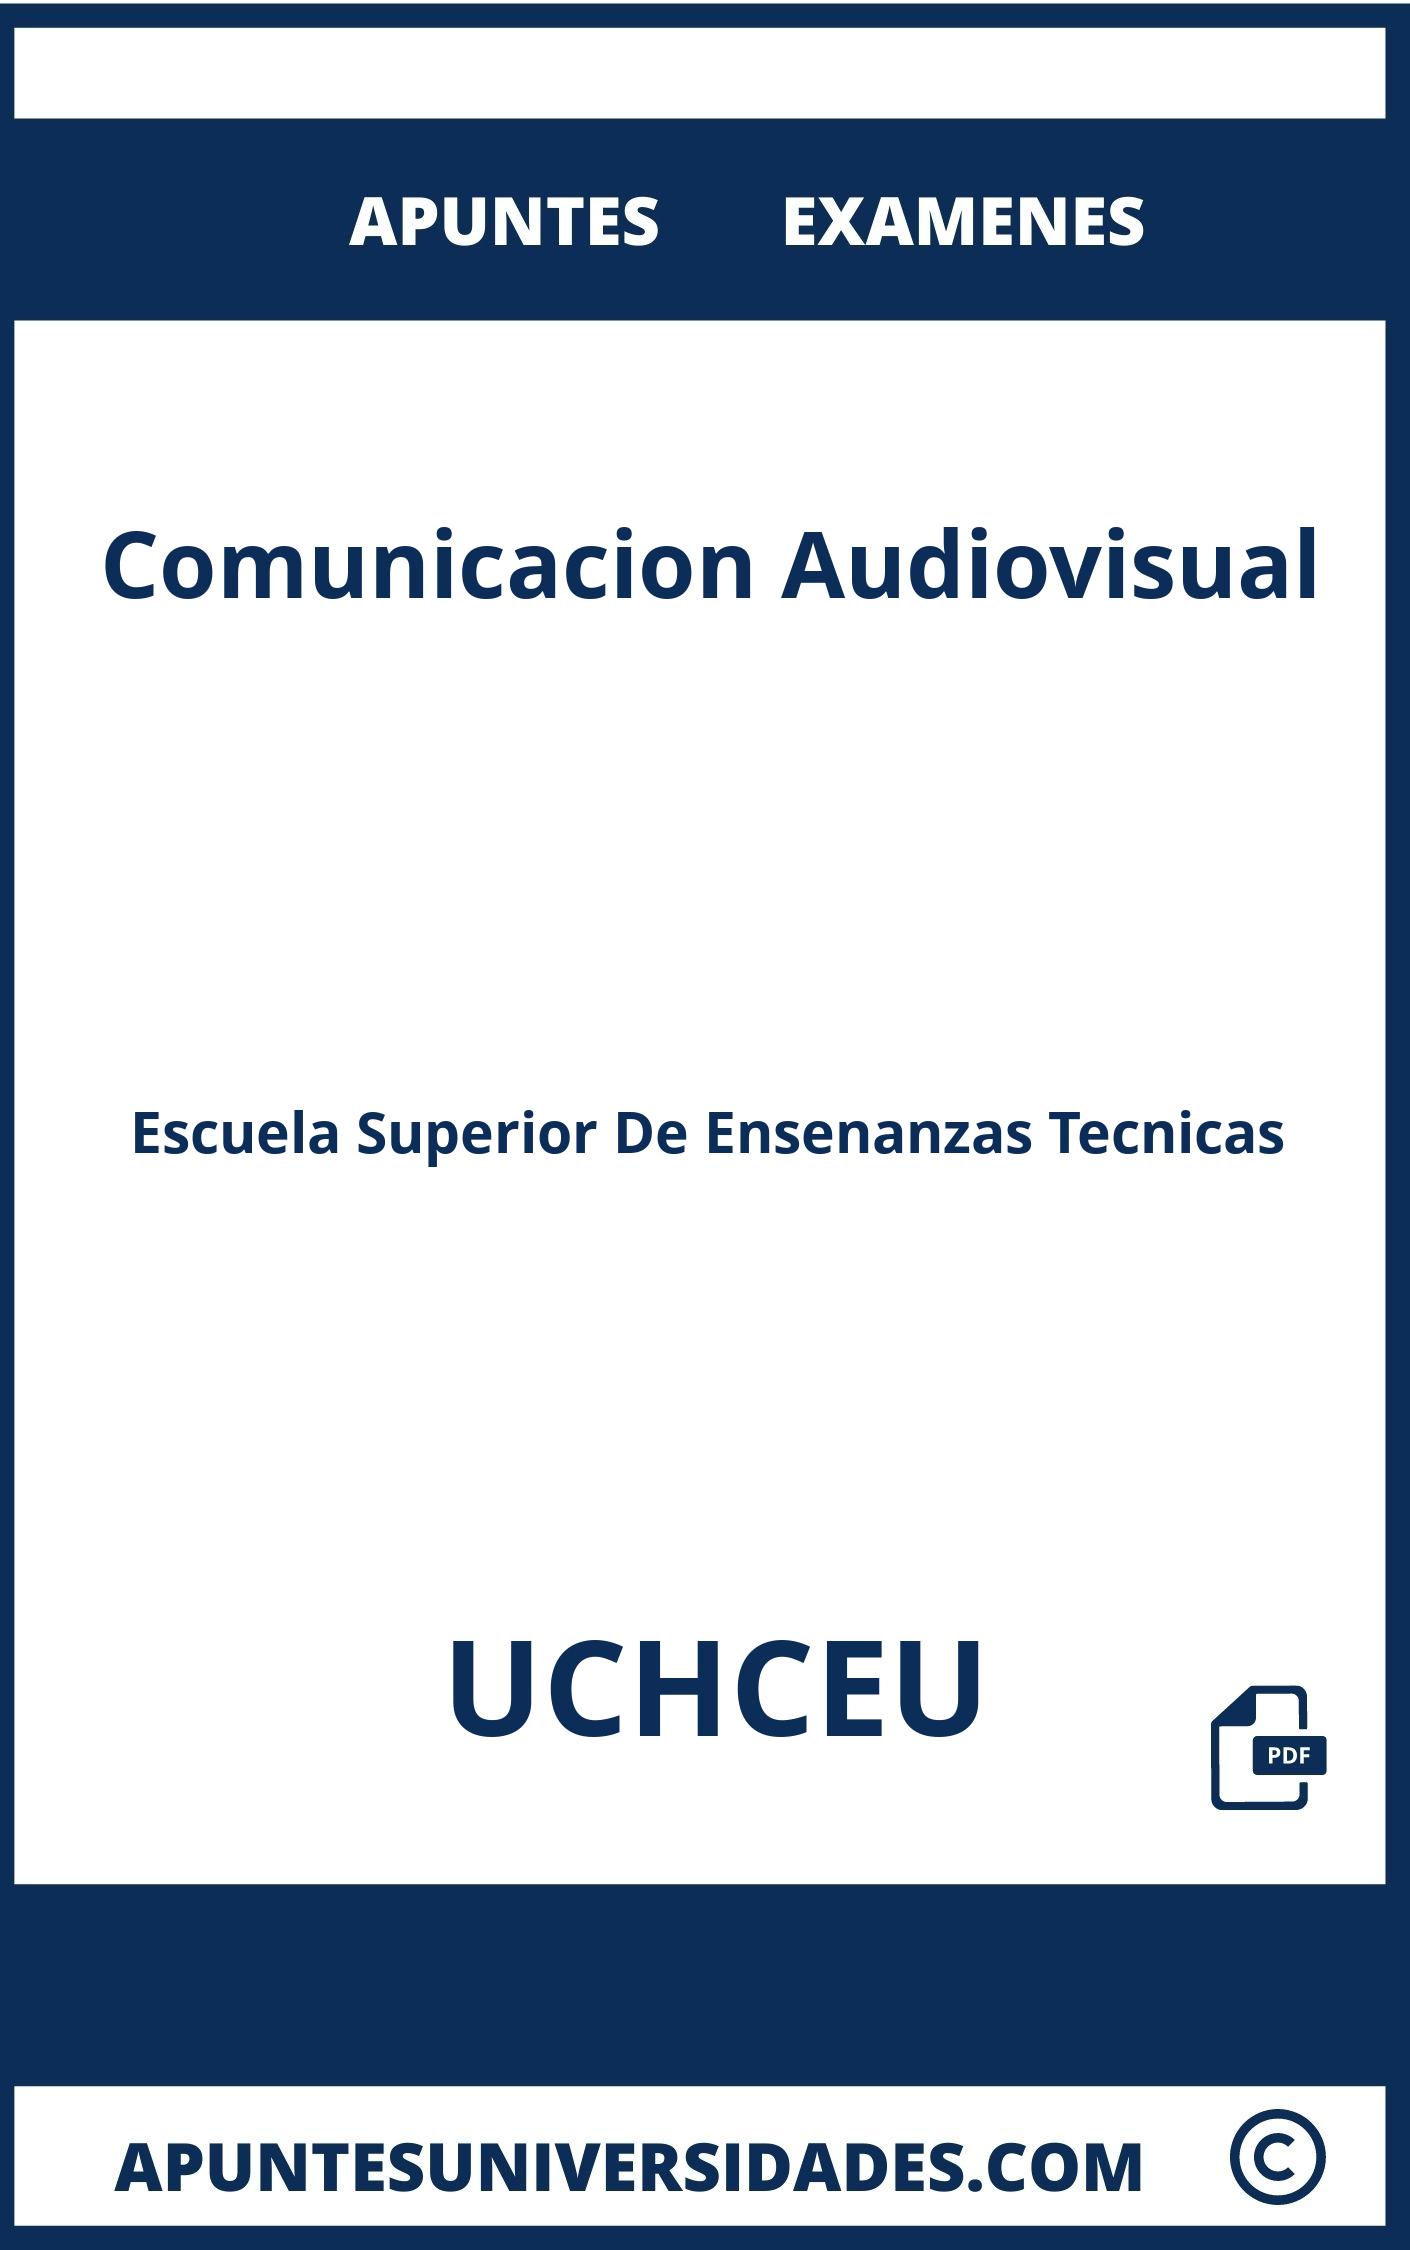 Apuntes Comunicacion Audiovisual UCHCEU y Examenes